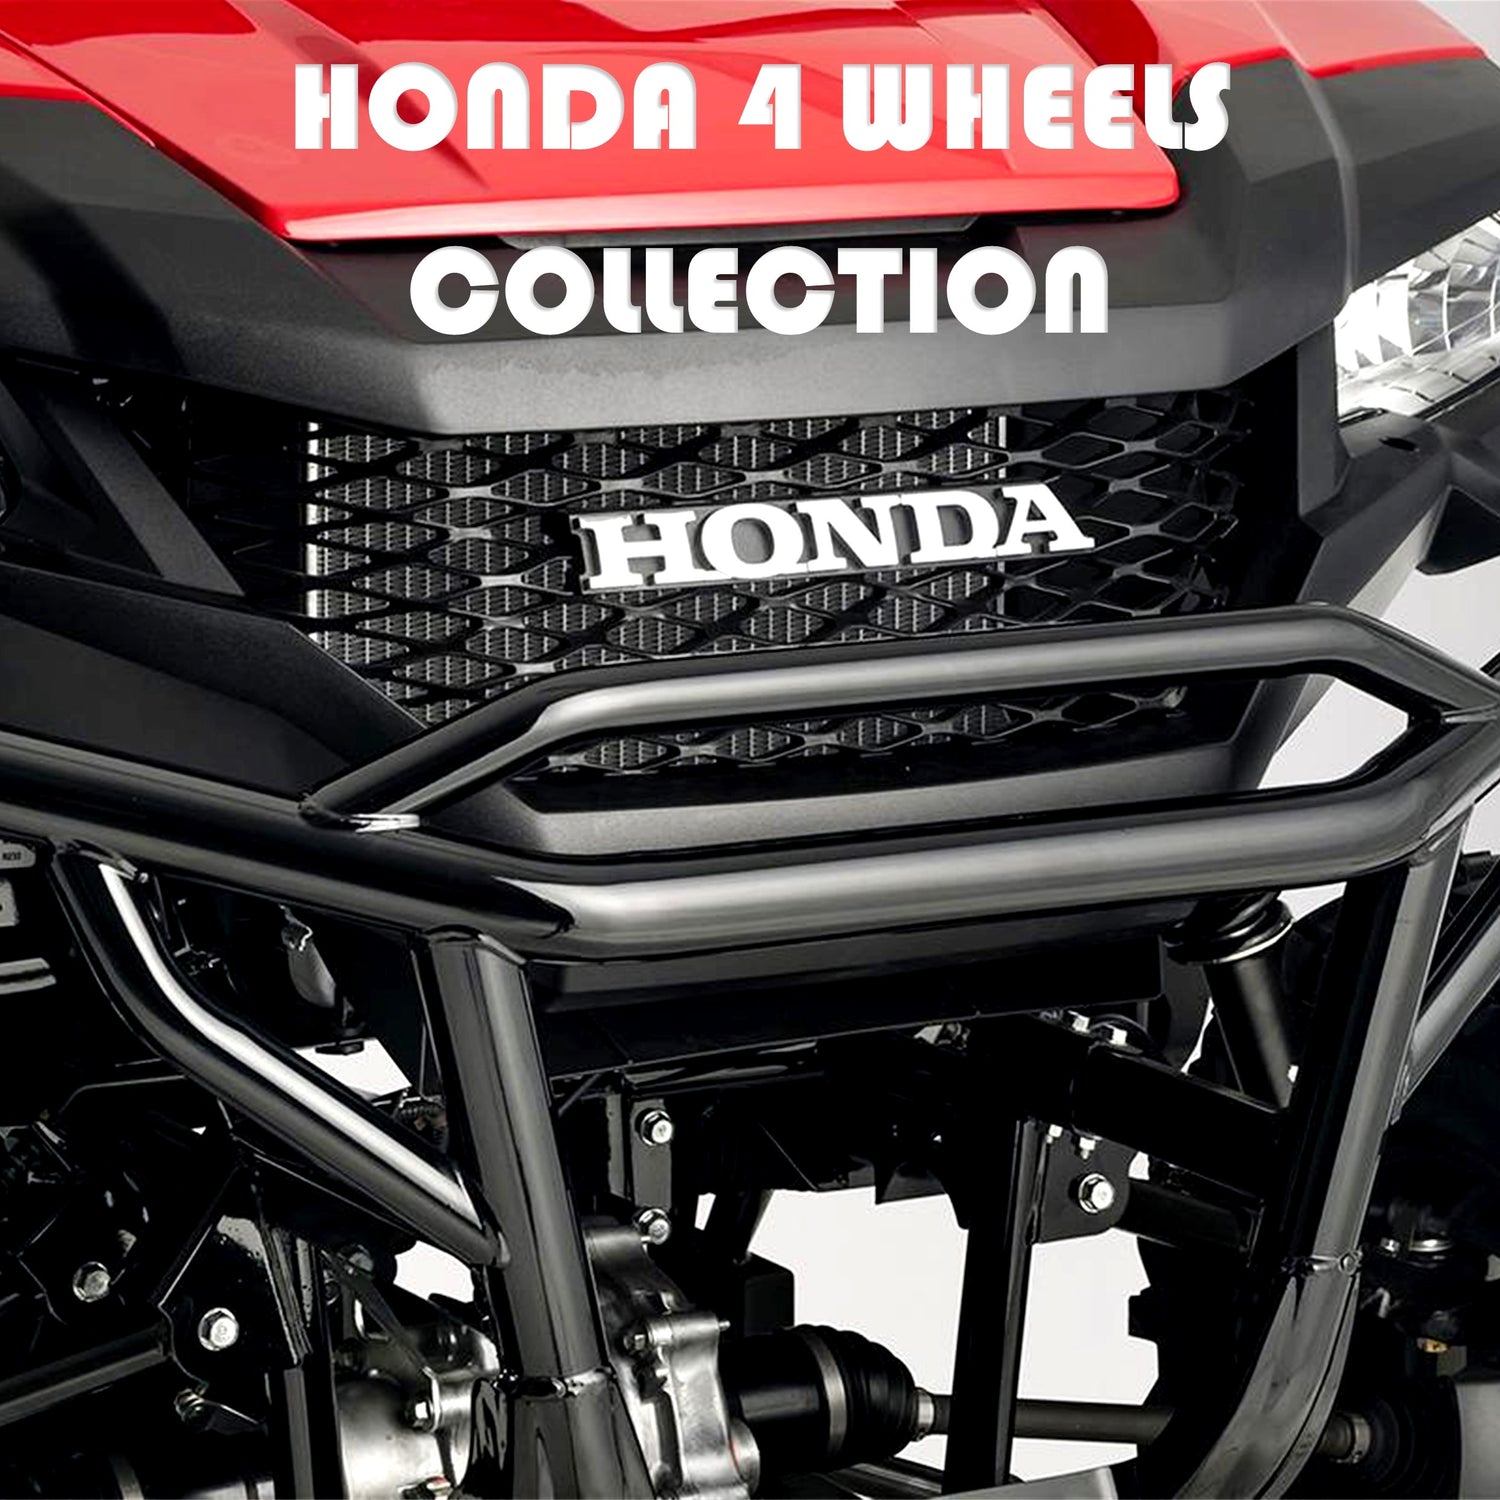 All Honda 4 Wheel